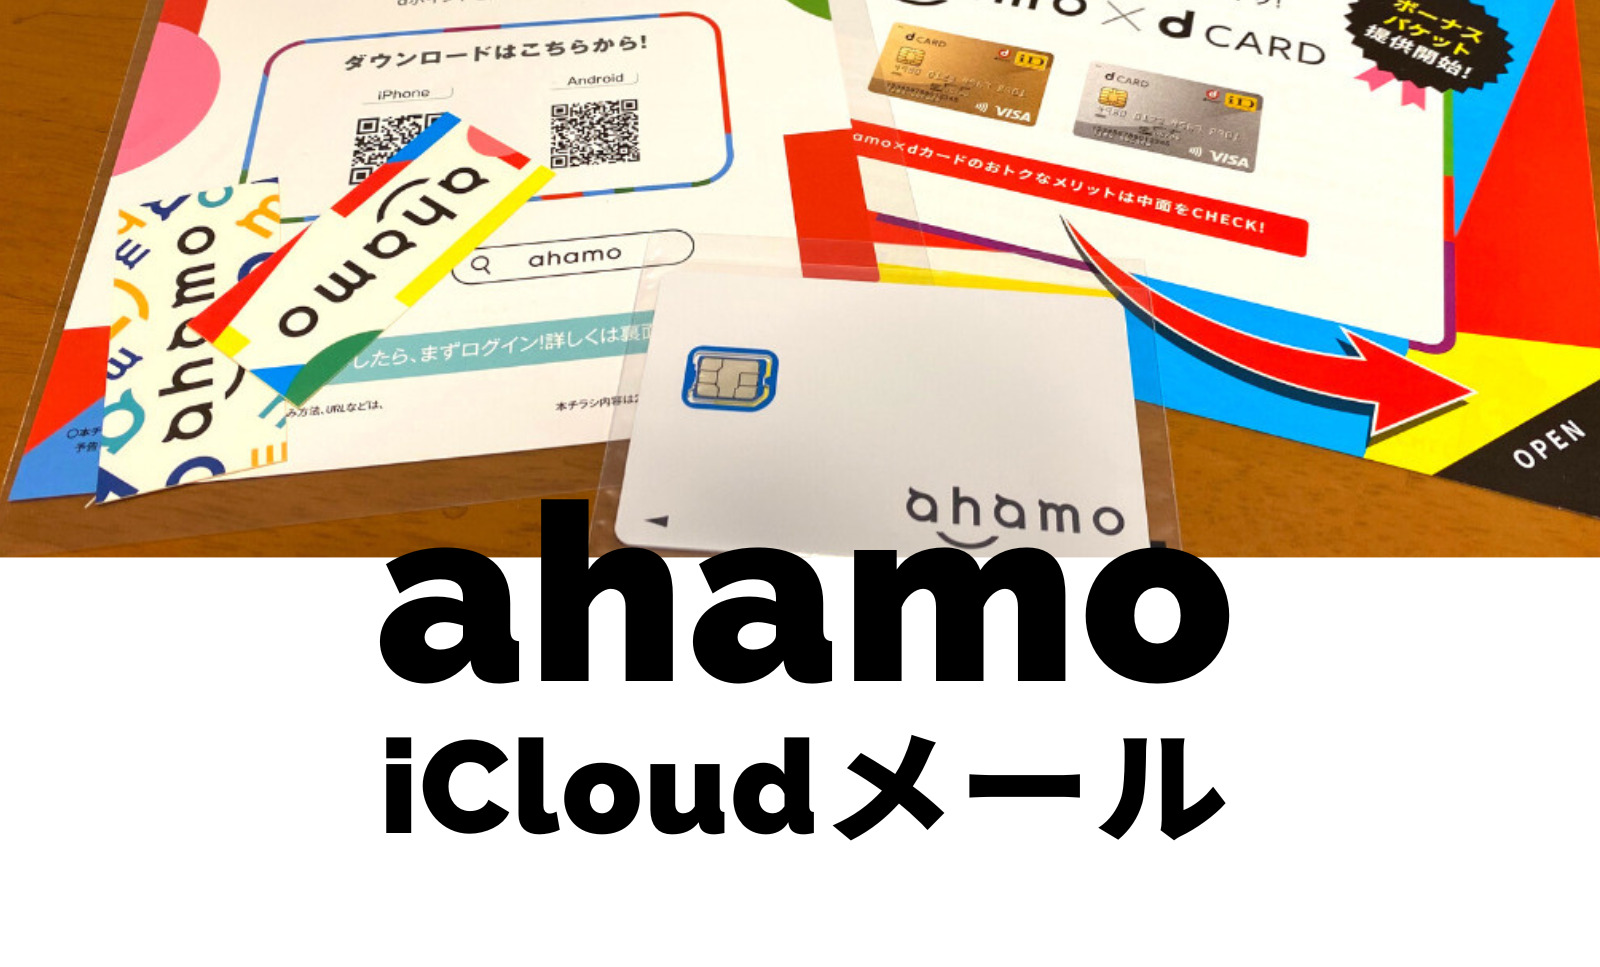 ahamo(アハモ)でiCloudメール(アイクラウド)は使える&連絡先メールアドレスに登録可能。のサムネイル画像